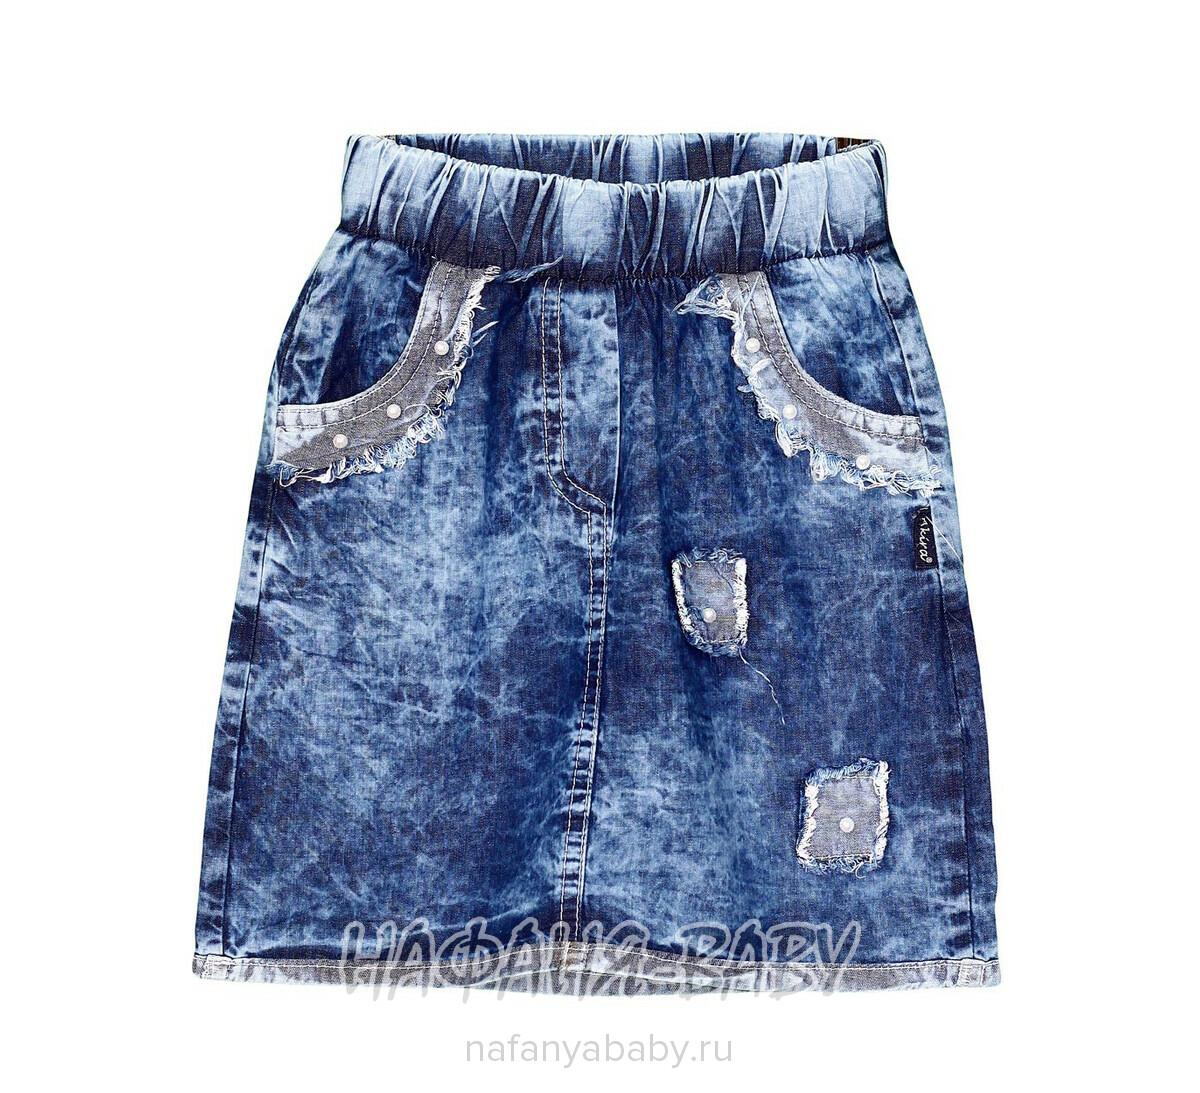 Детская джинсовая юбка AKIRA арт: 2653, 5-9 лет, 1-4 года, оптом Турция